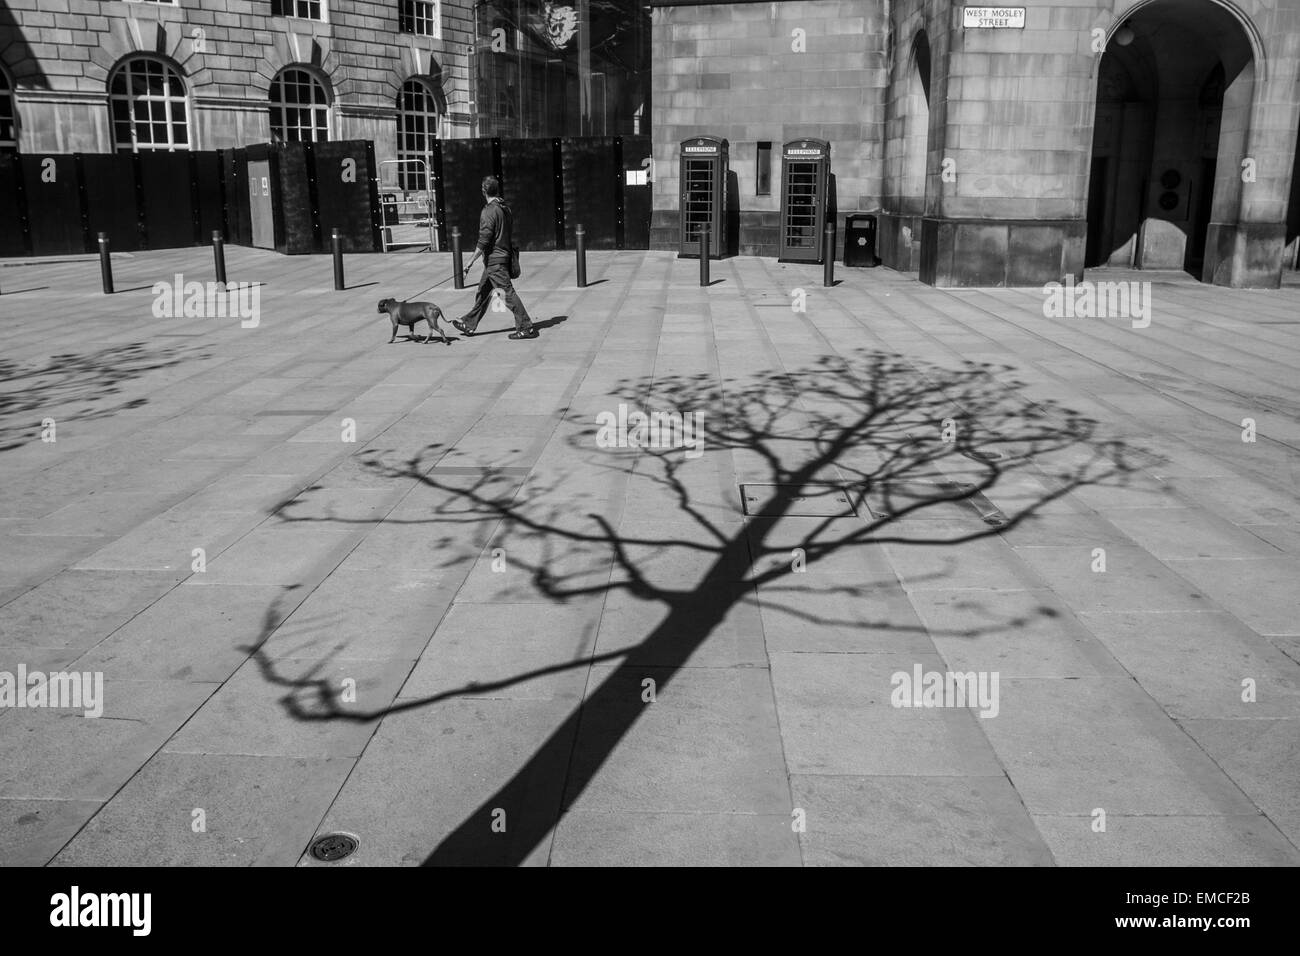 Ein einsamer Baum Projekte seinen Schatten auf die neu renovierte Fußgängerzone rund um die Central Library, Manchester Stockfoto